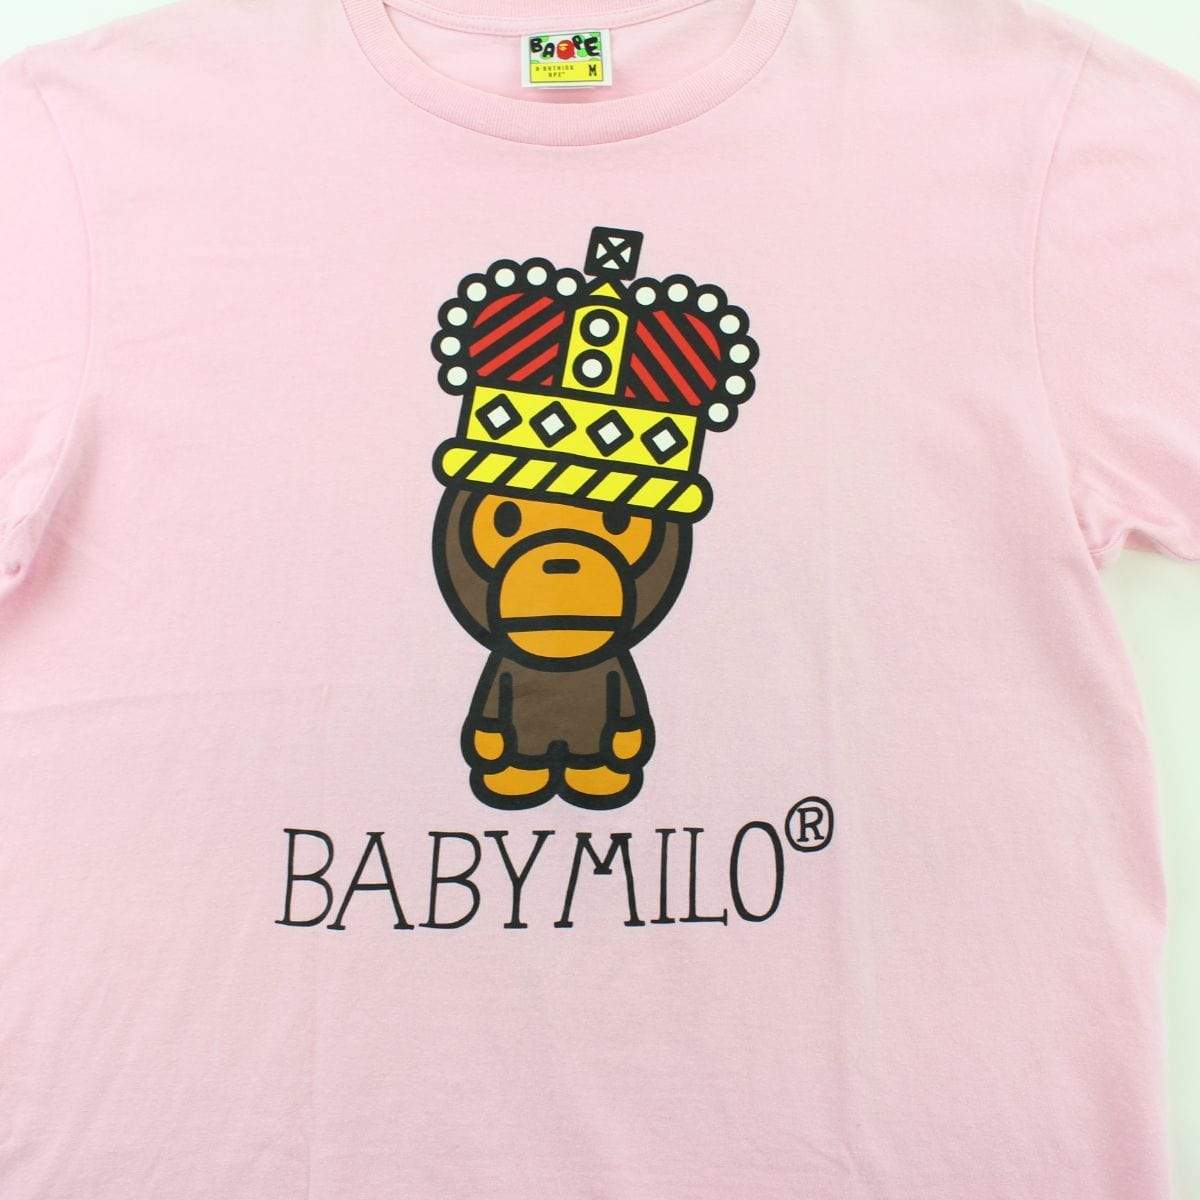 Bape Baby Milo Crown Tee Pink - SaruGeneral